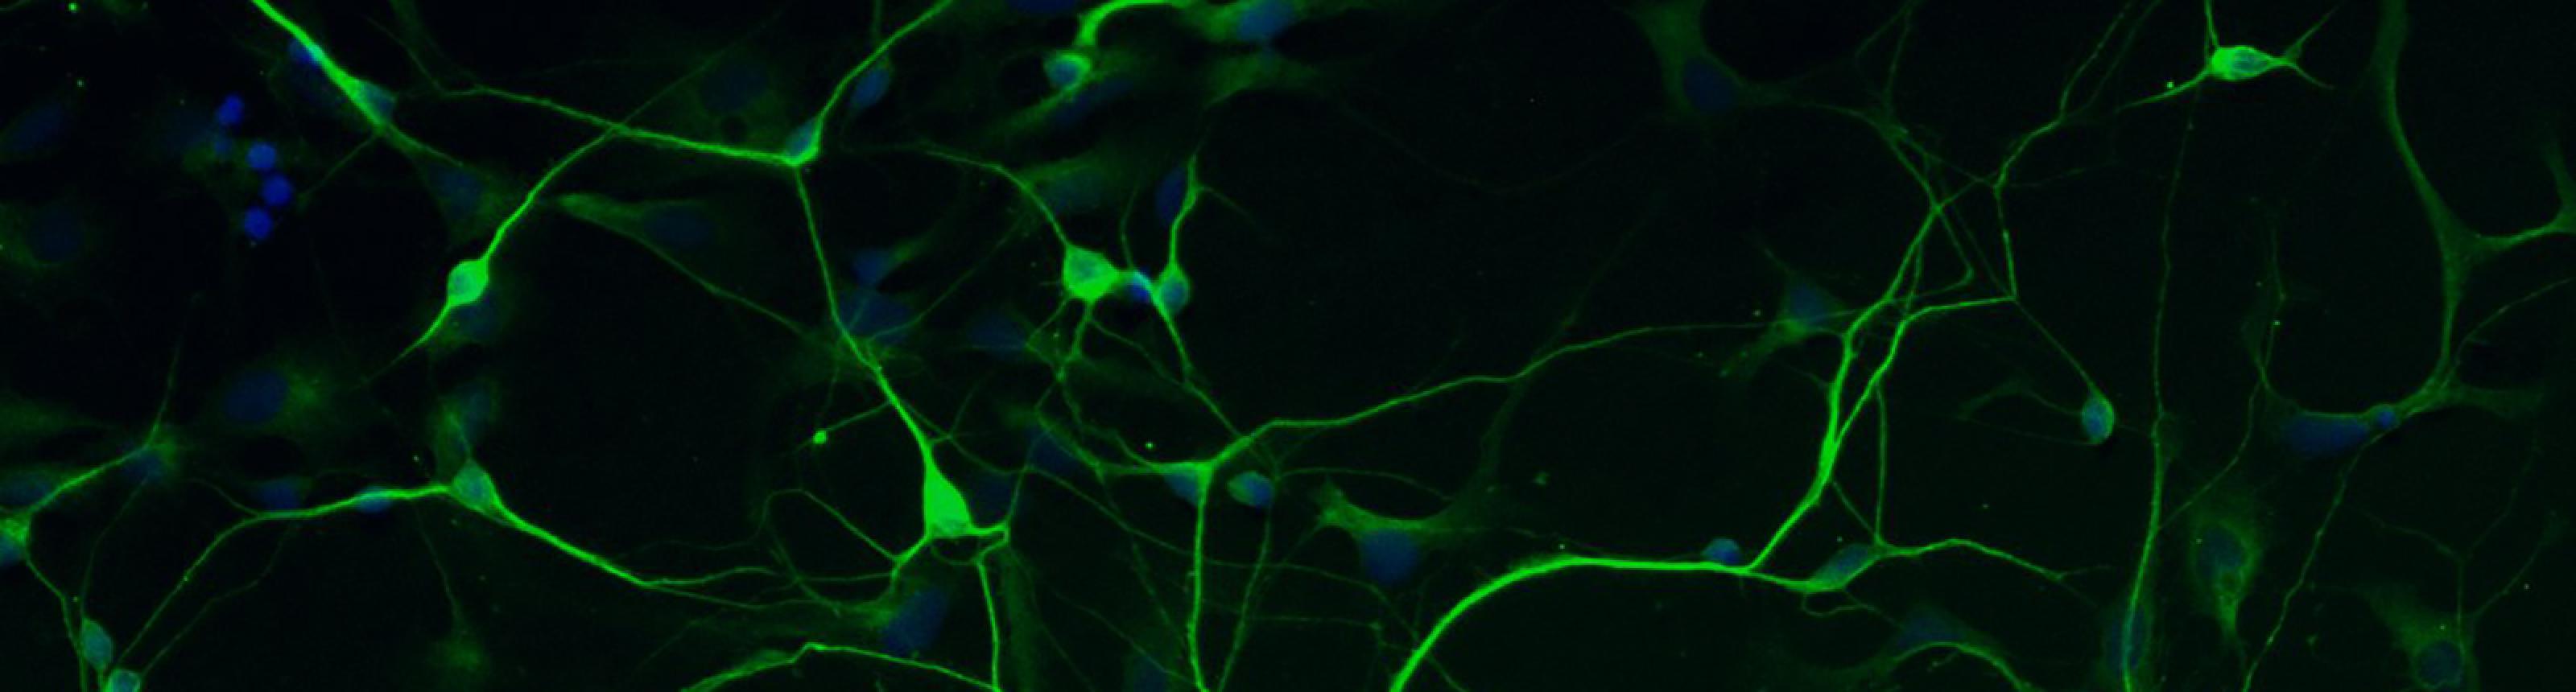 Human stem cell-derived neuron